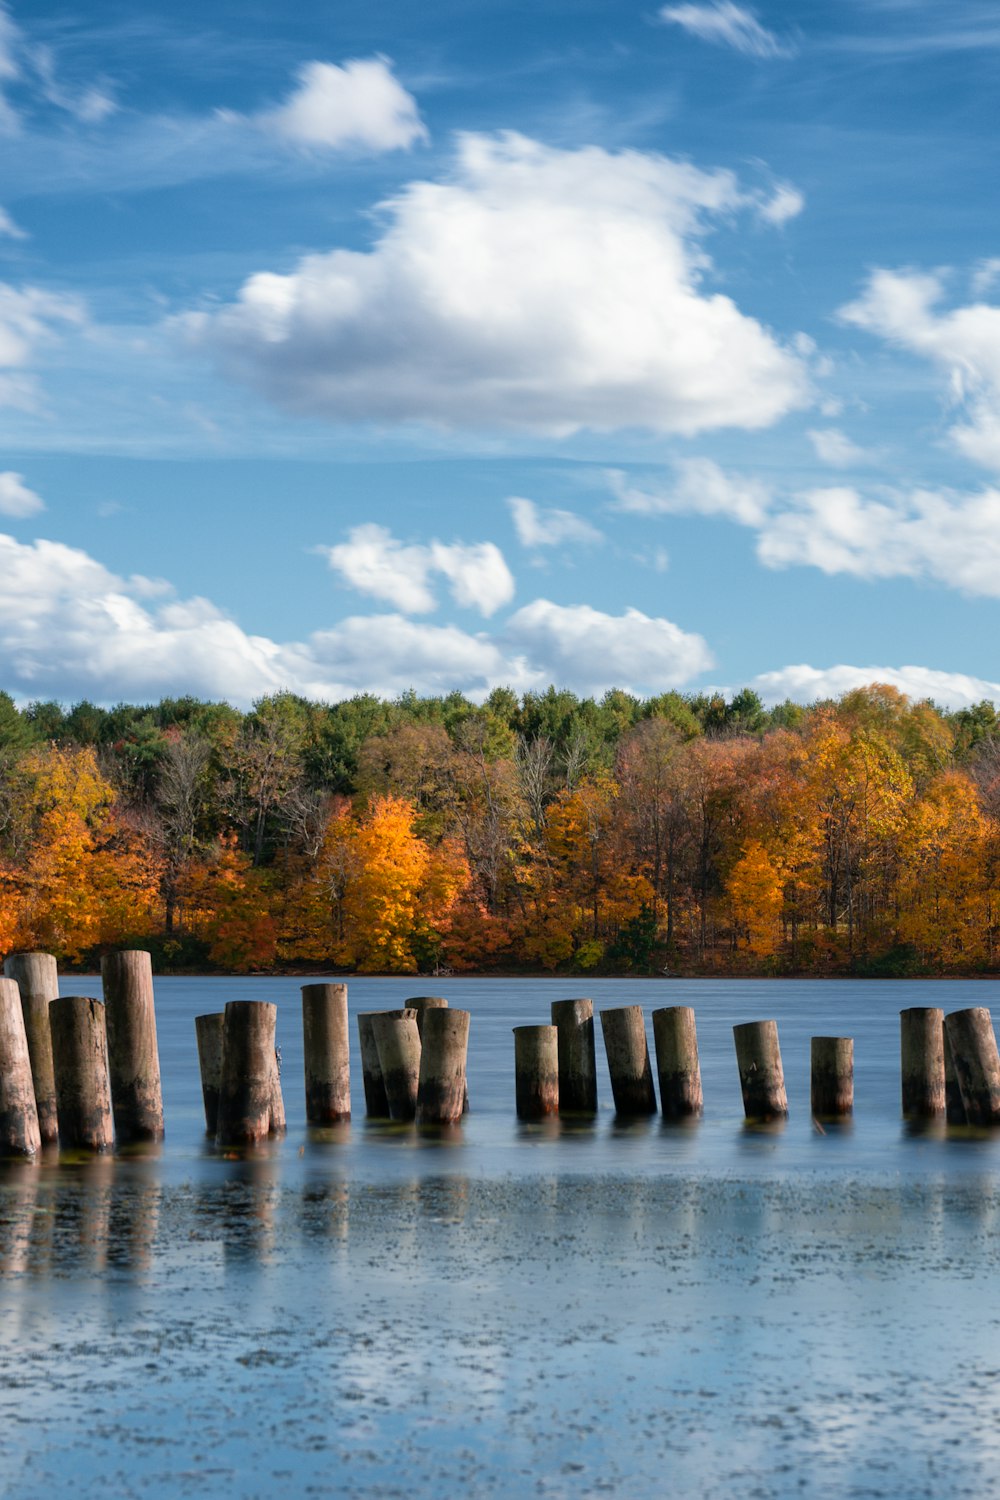 postes de madera marrones en el cuerpo de agua cerca de árboles verdes y amarillos bajo azul y blanco